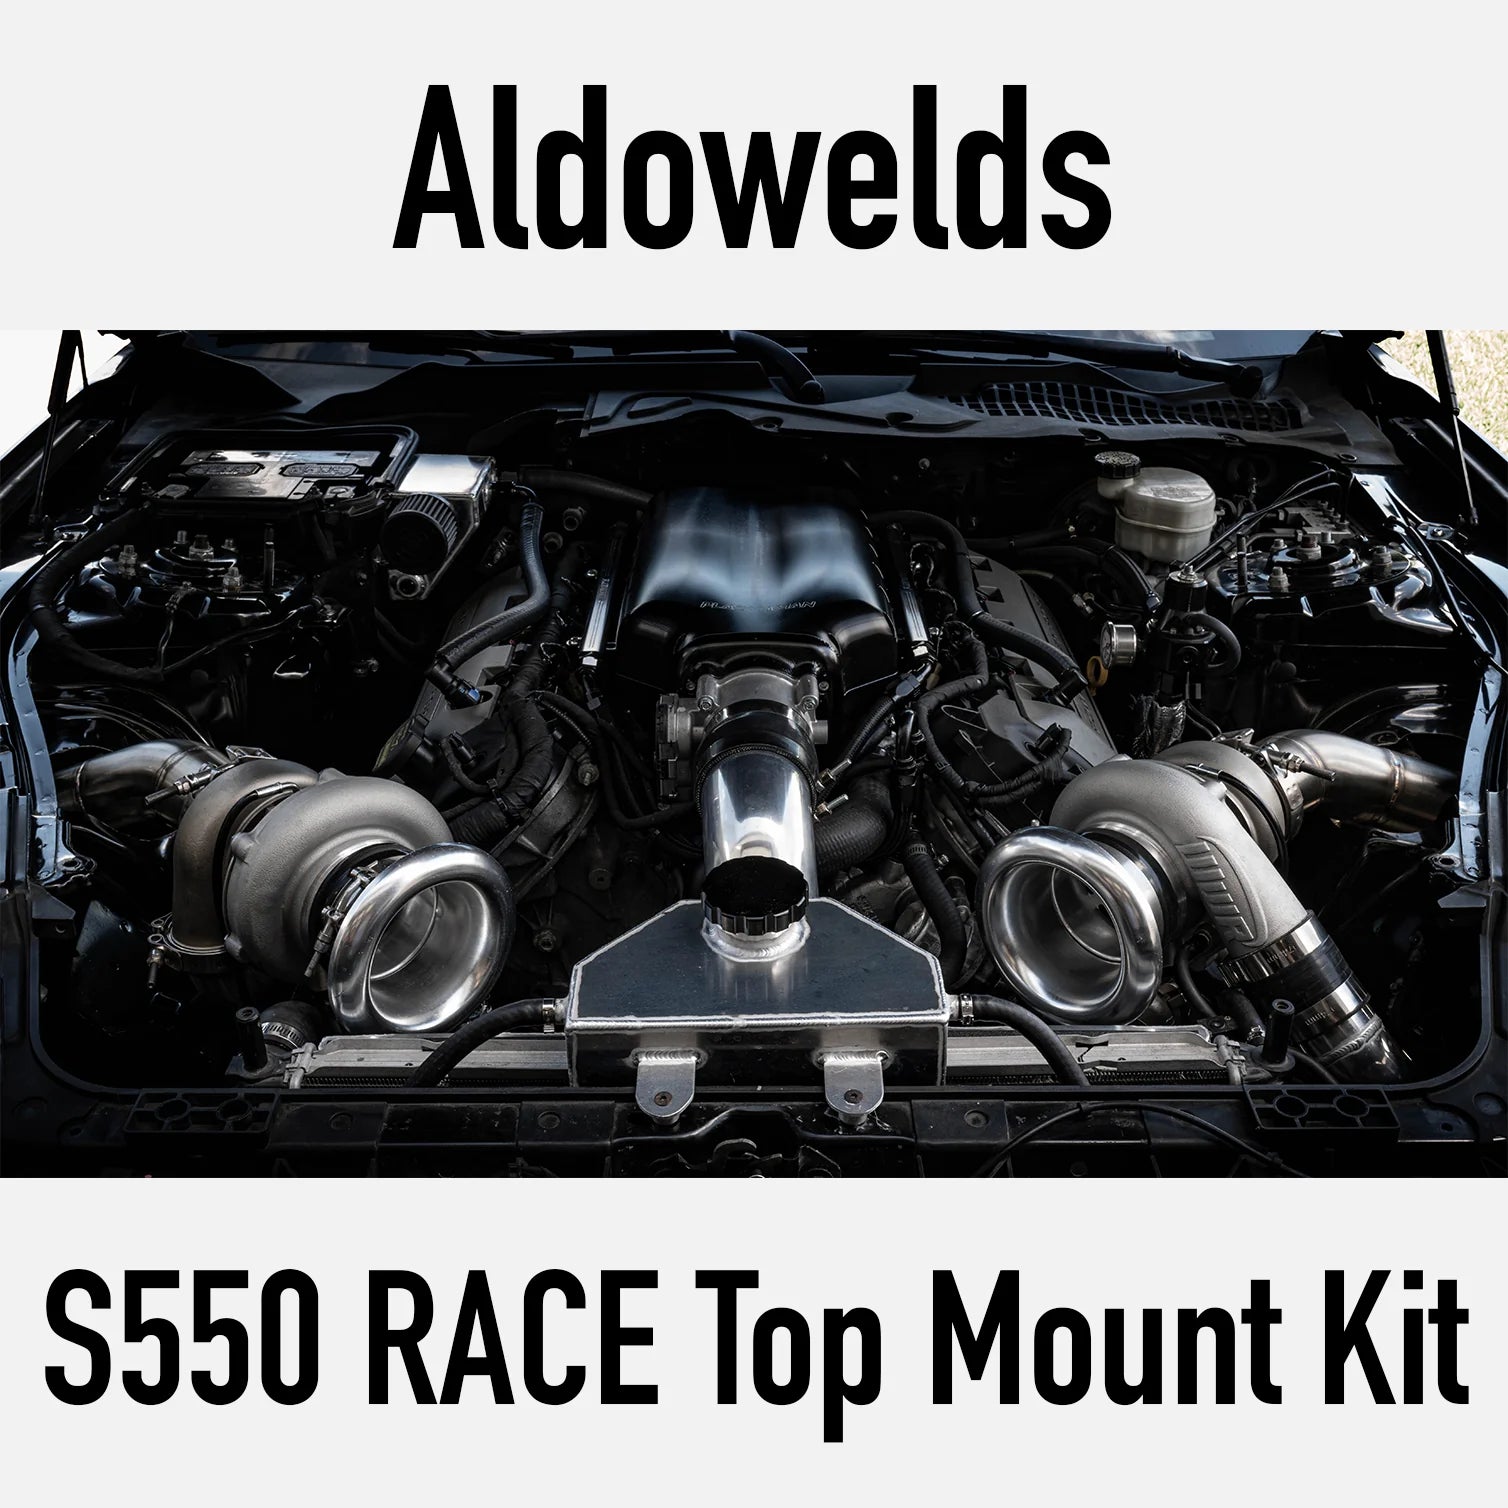 Aldowelds - Aldowelds S550 Race Top-Mount Twin-Turbo Kit - The Speed Depot